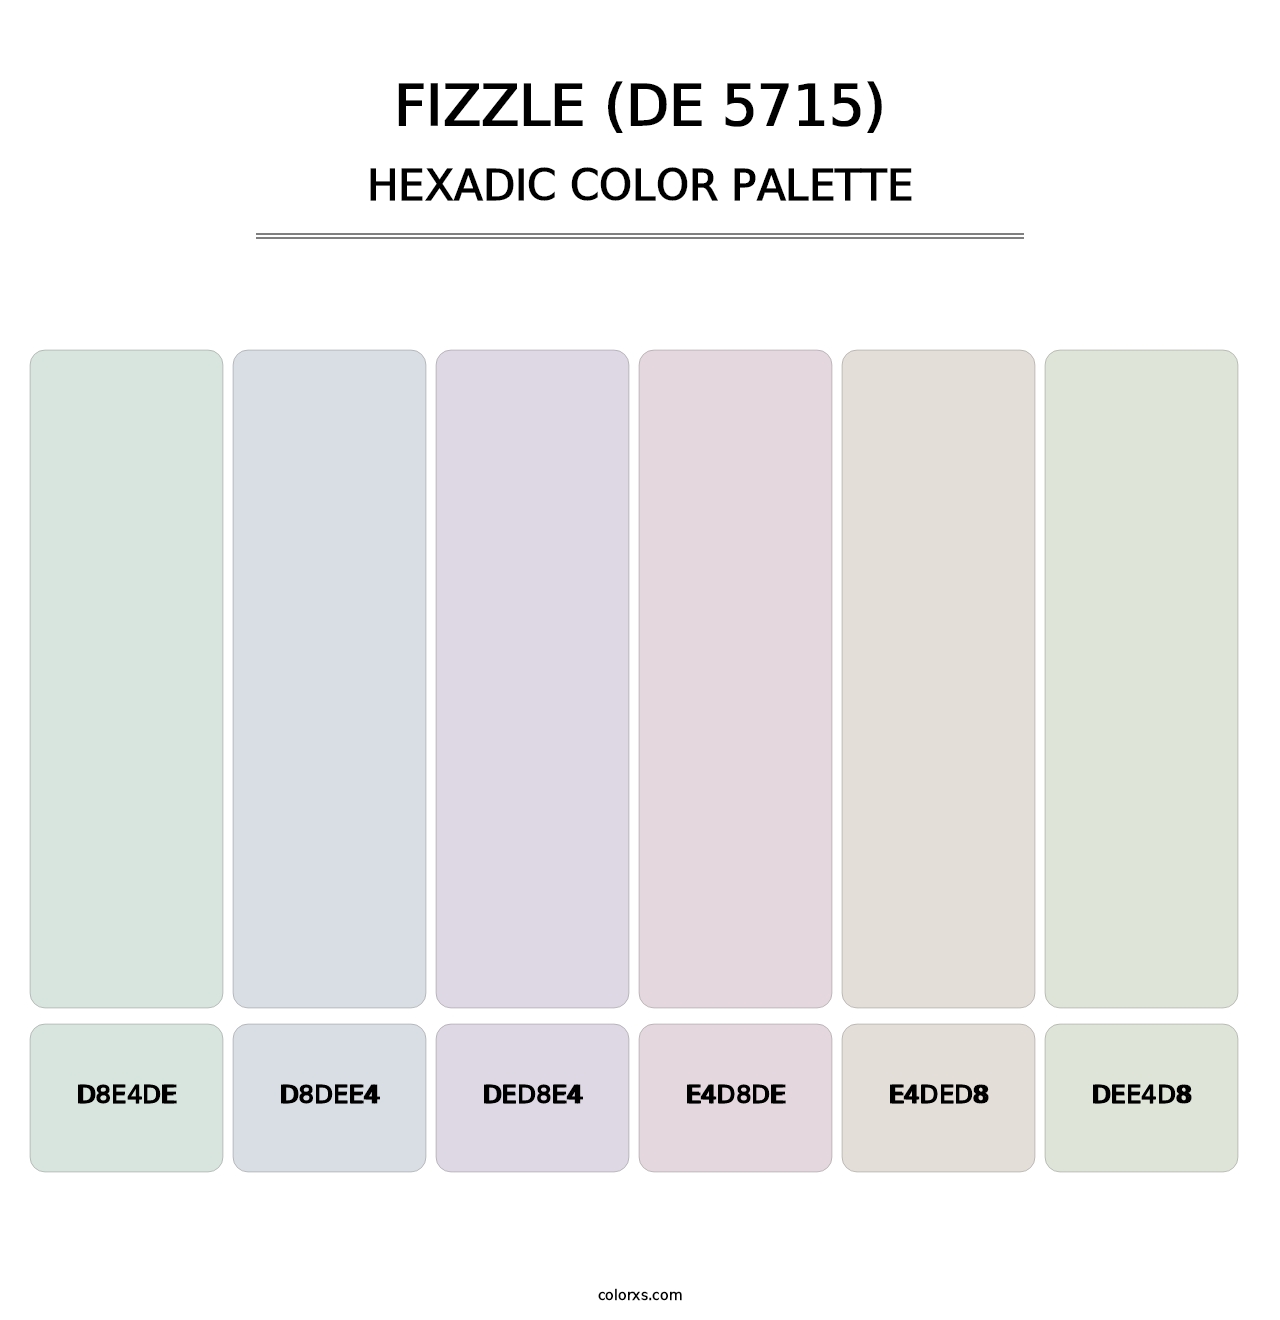 Fizzle (DE 5715) - Hexadic Color Palette